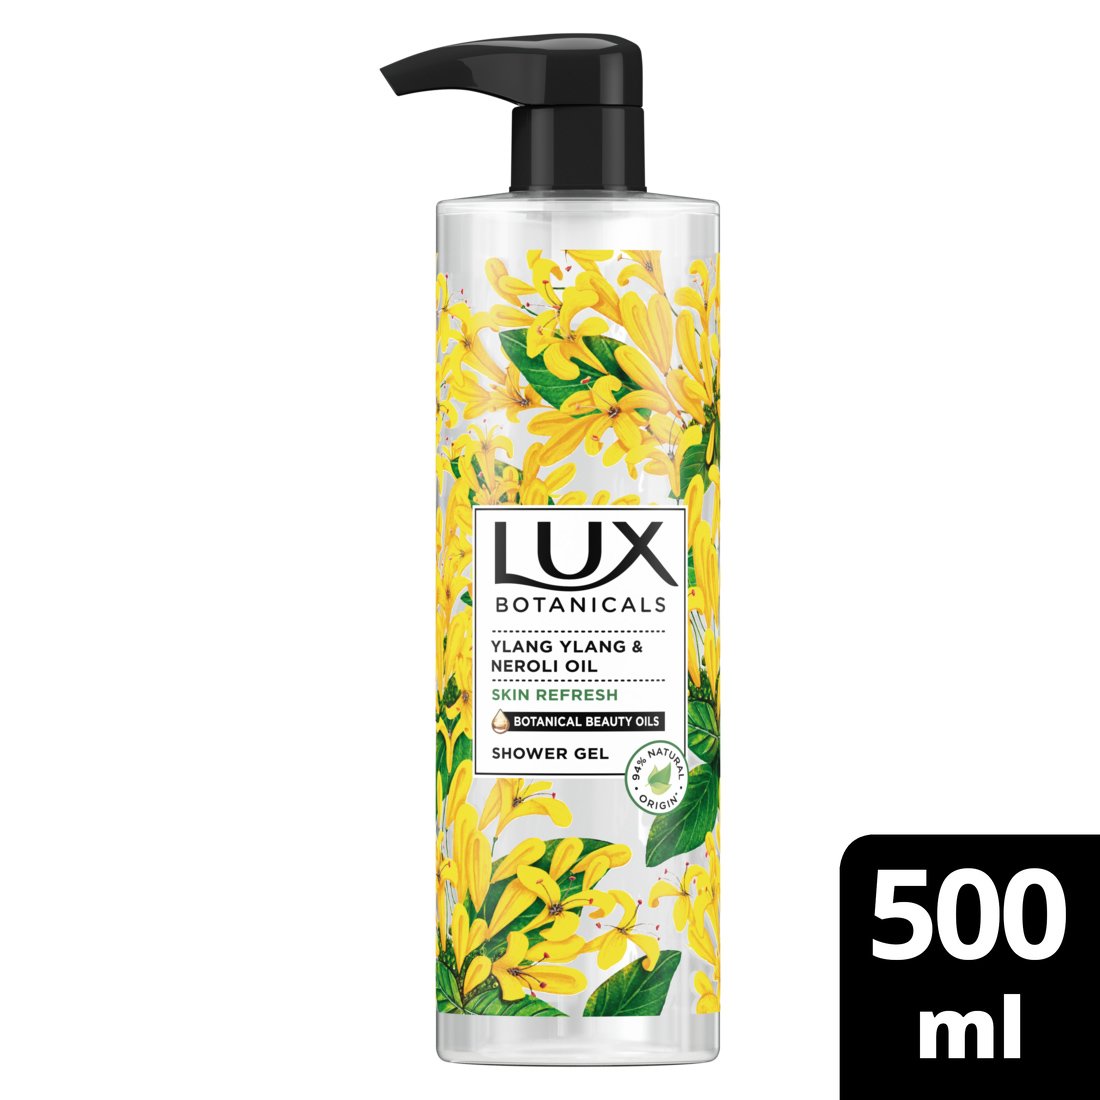 Lux Botanicals Ylang Ylang & Neroli Oil Skin Refresh Shower Gel Αφρόλουτρο με Πλούσιο Άρωμα Ylang Ylang & Έλαιο Νερολί 500ml